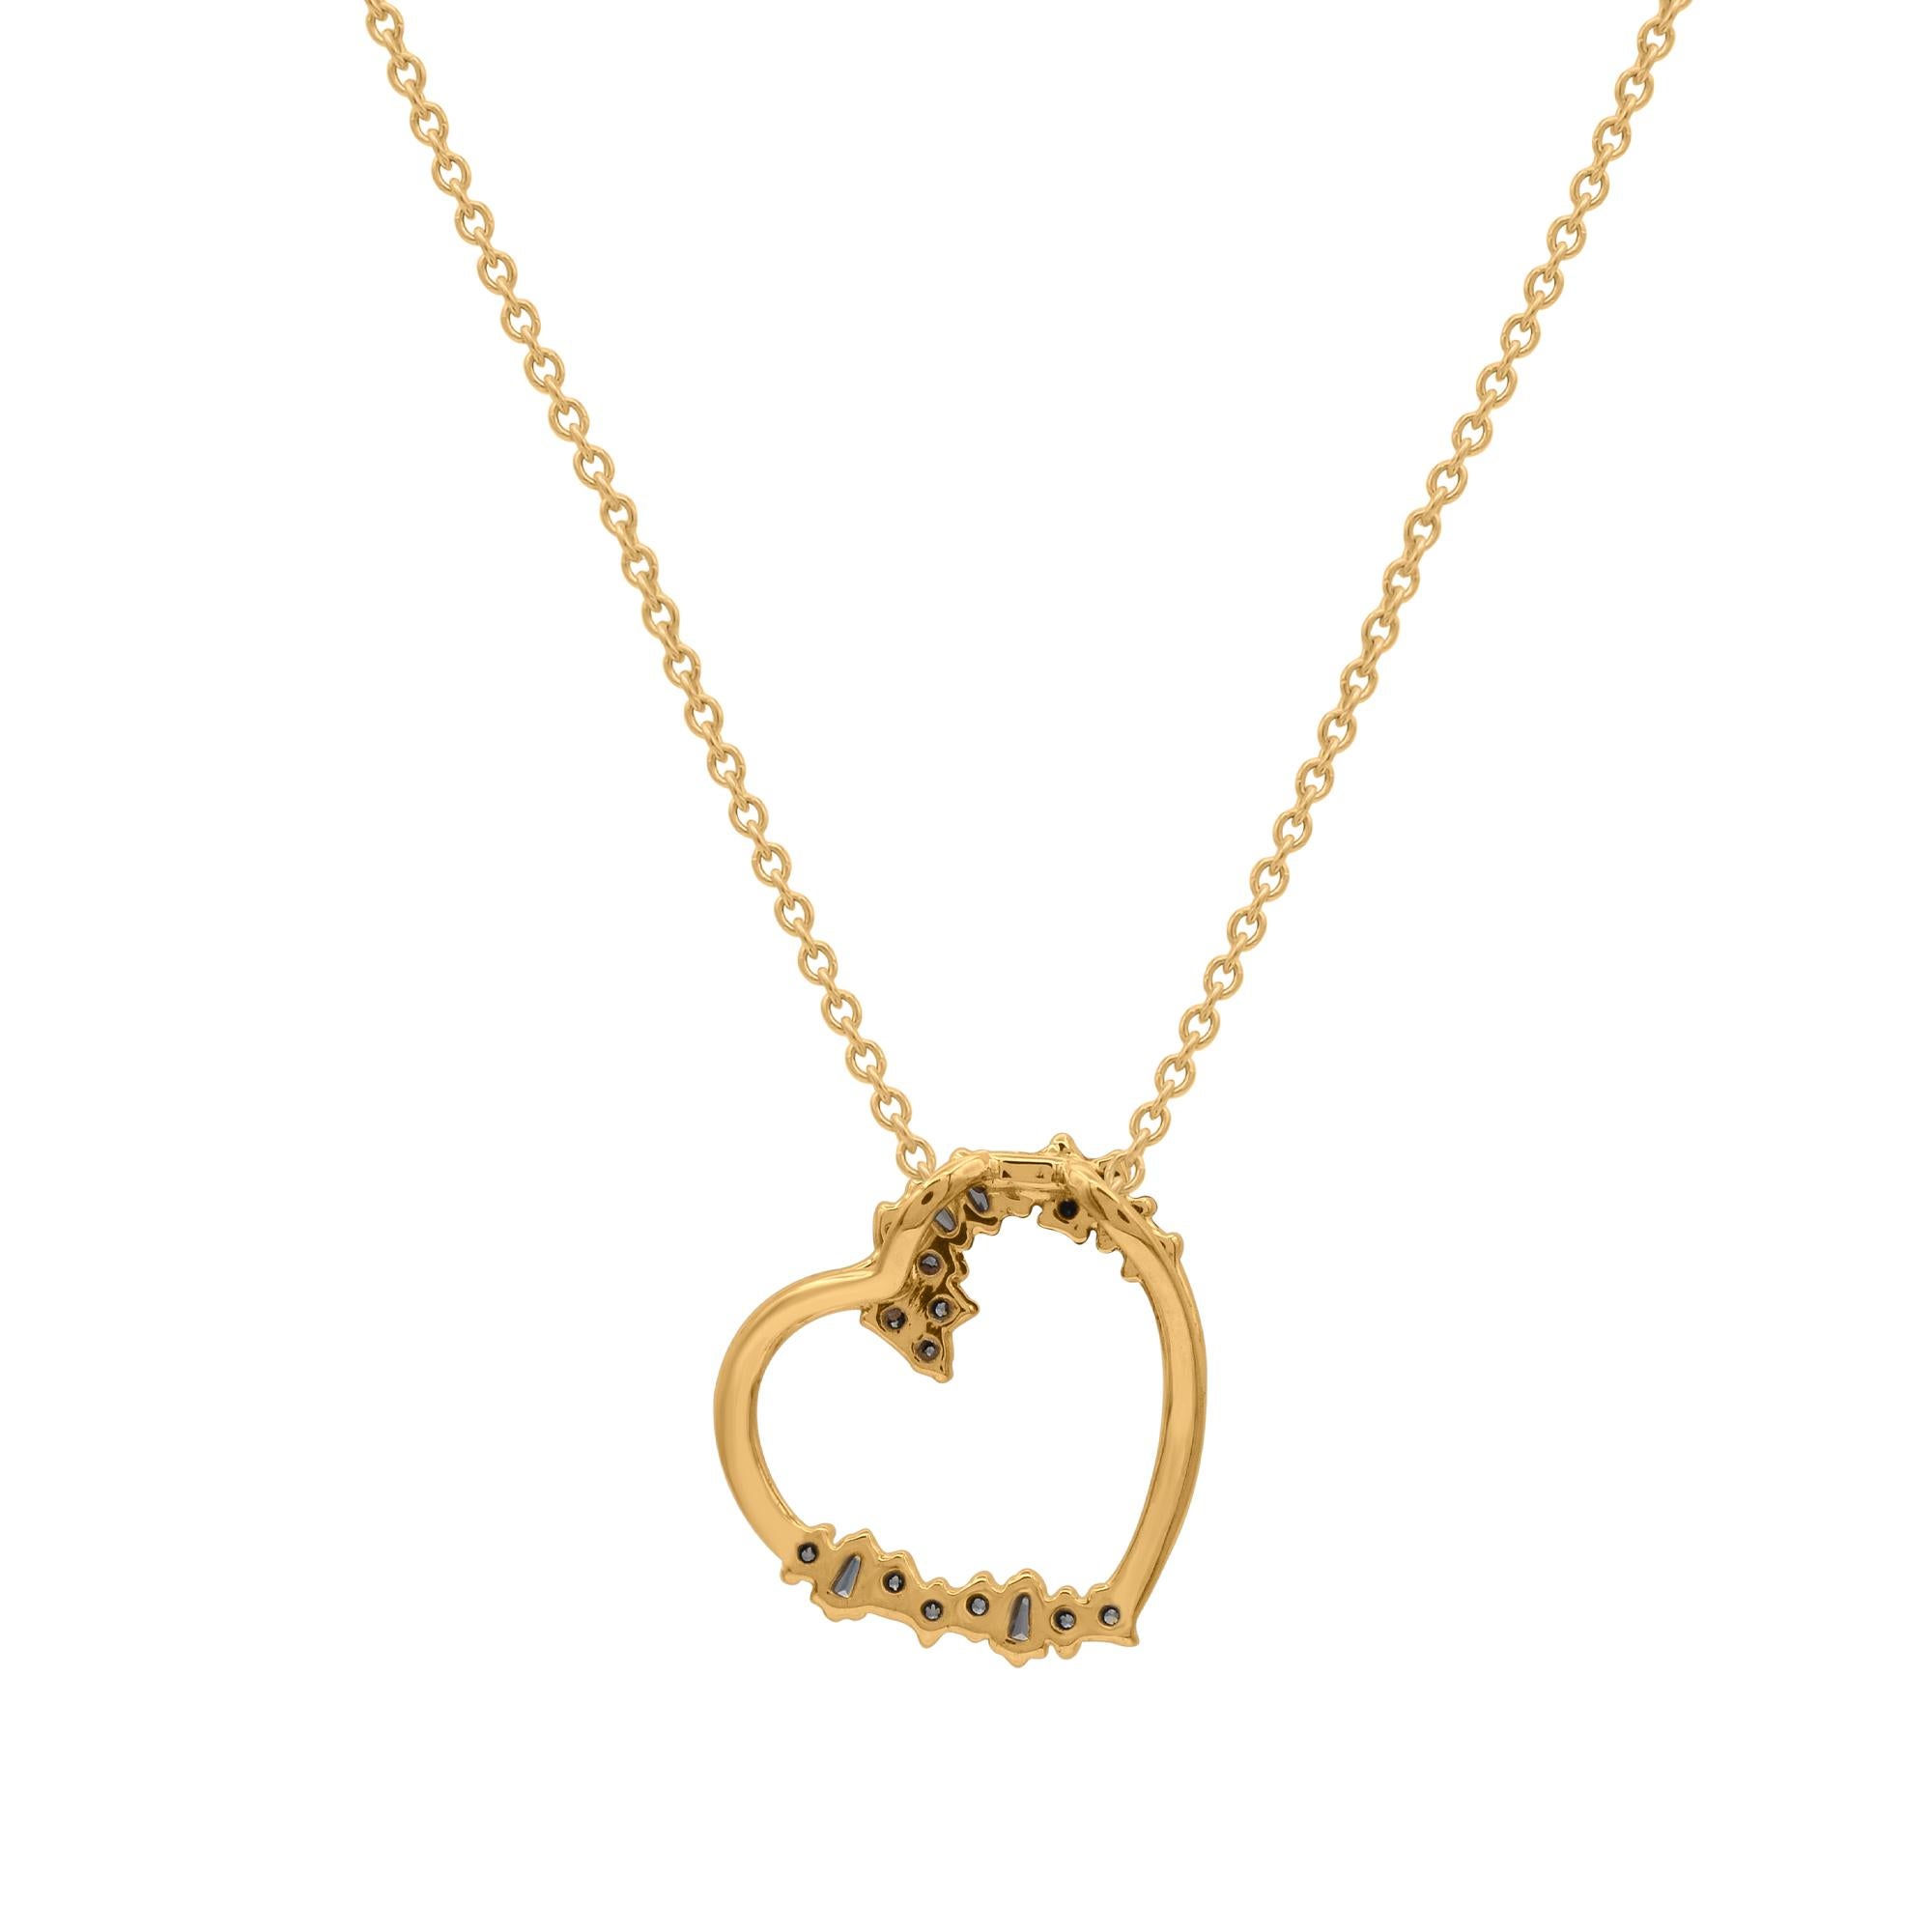 Romantic TJD 0.15 Carat Round & Baguette Cut Diamond 18KT Gold Tilted Heart Pendant For Sale